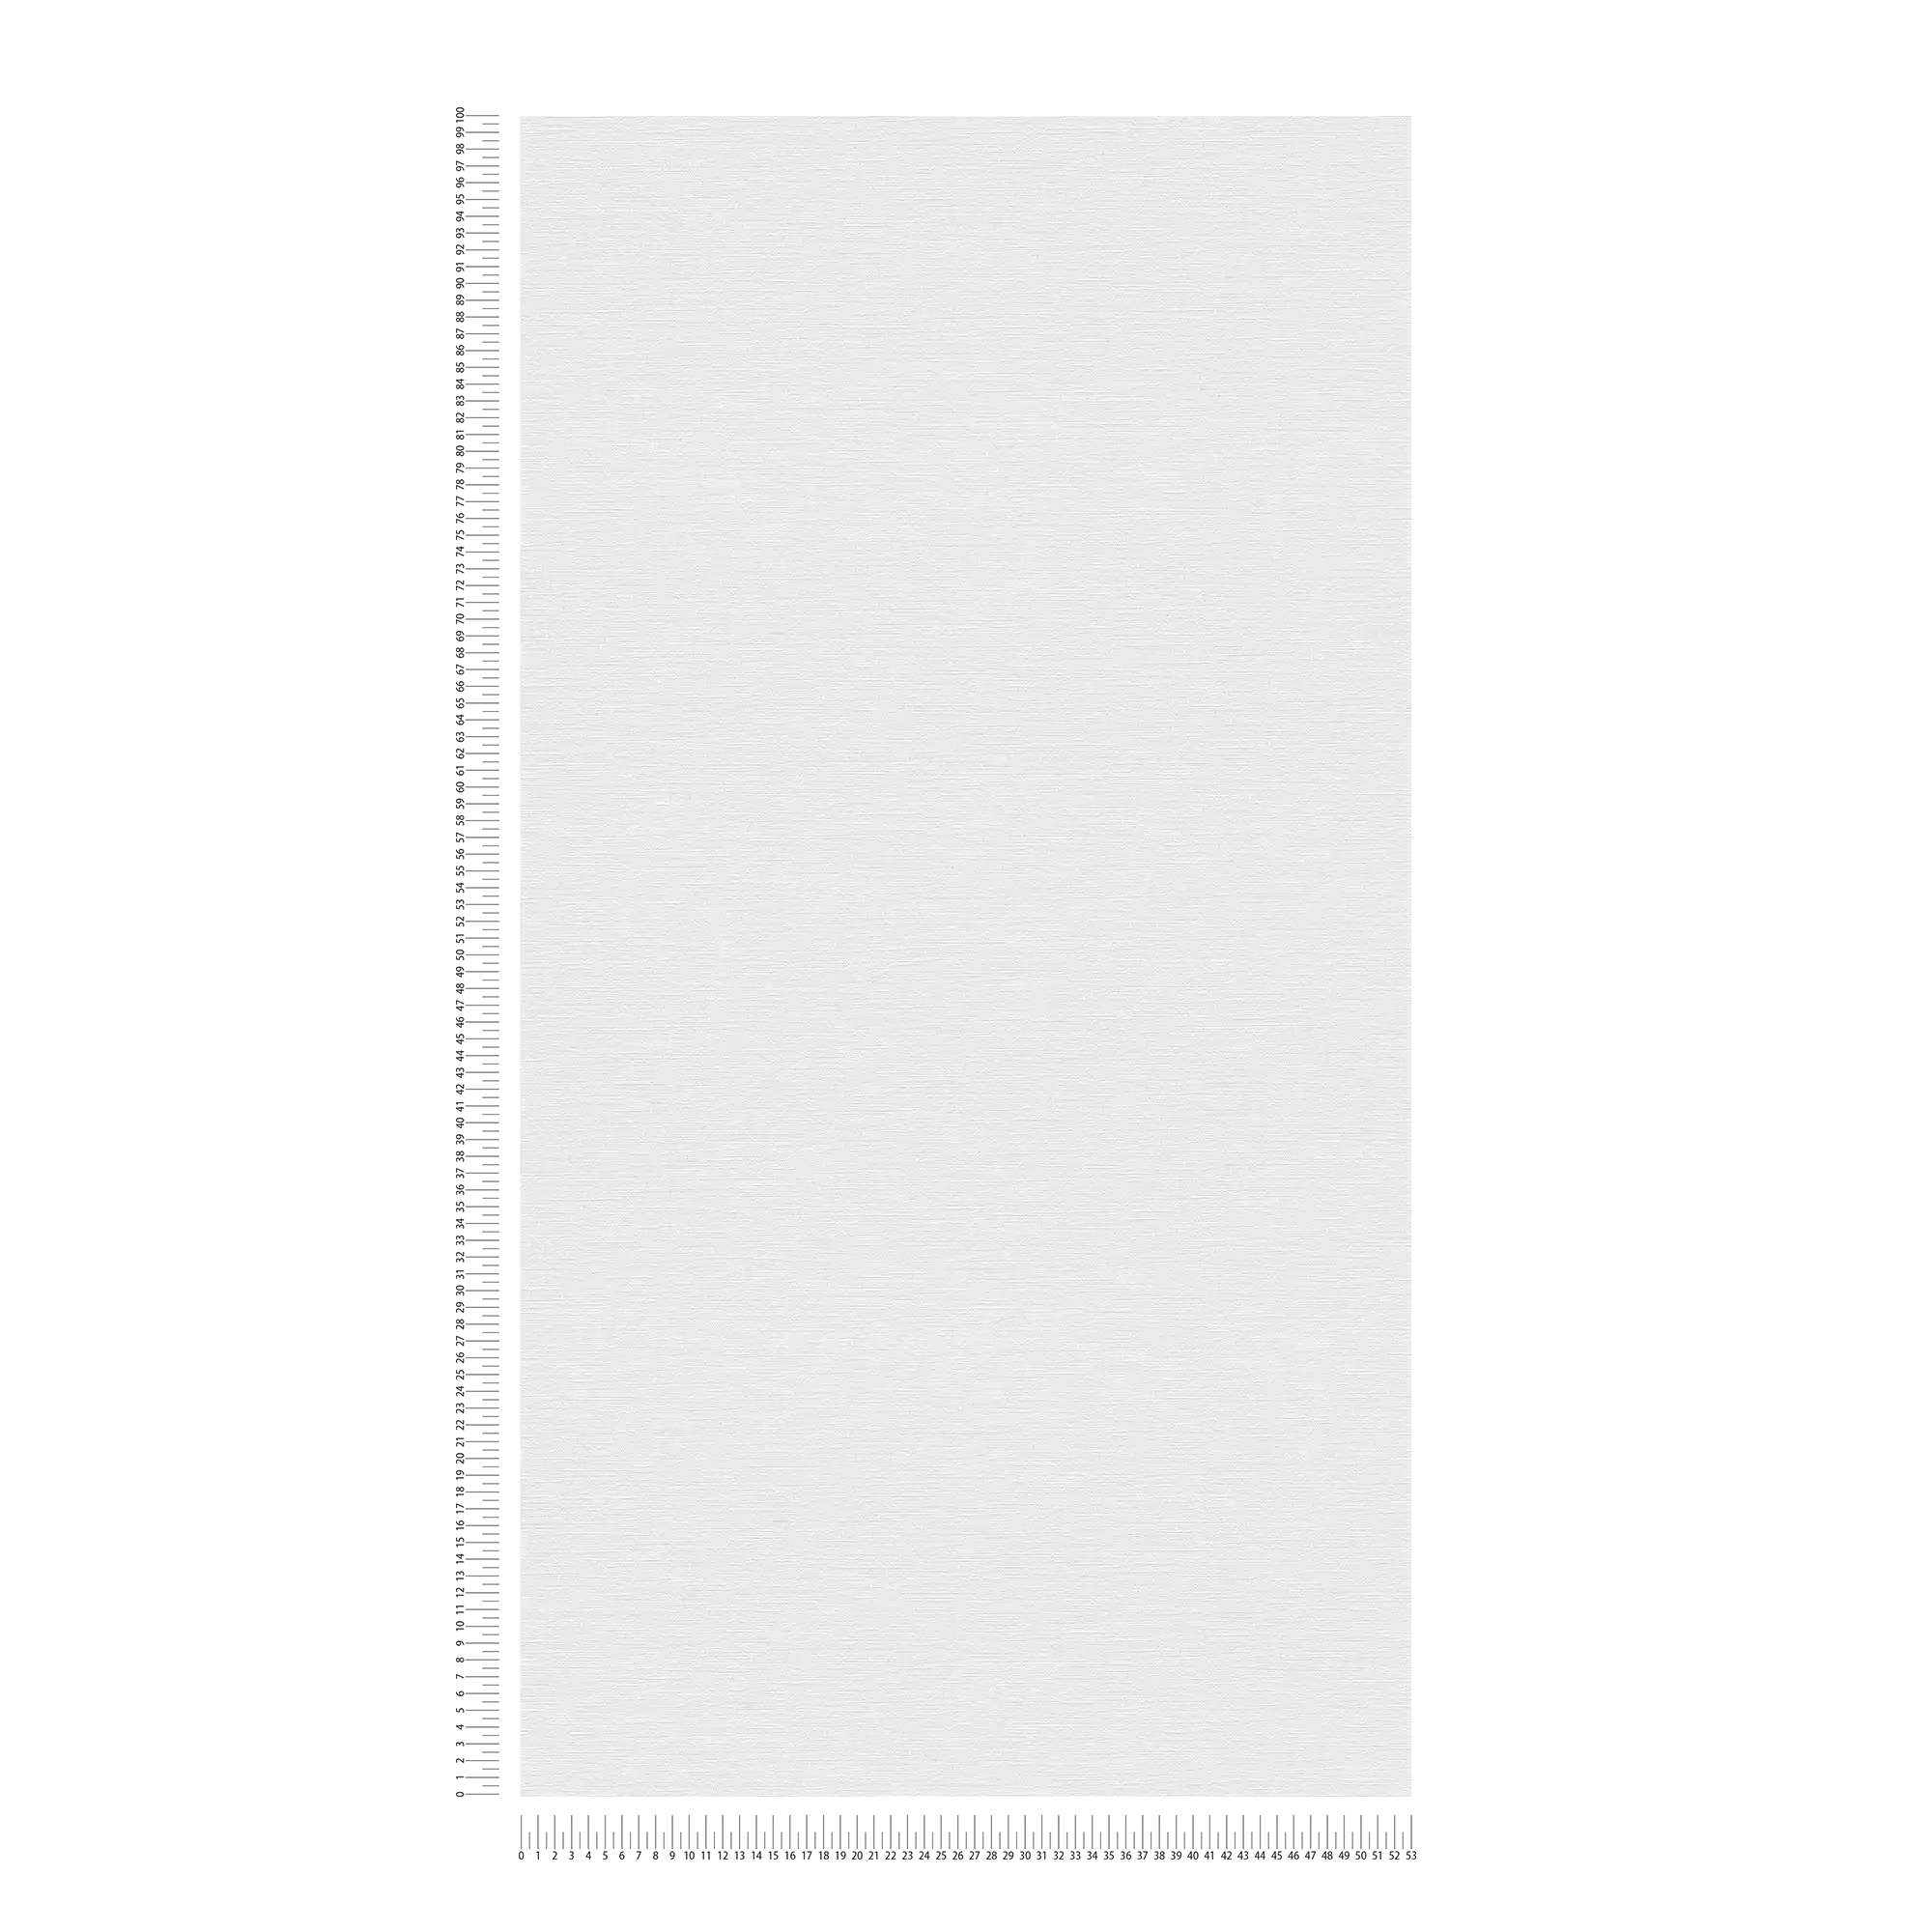             Carta da parati in tessuto non tessuto effetto lino con motivo strutturato - grigio, bianco
        